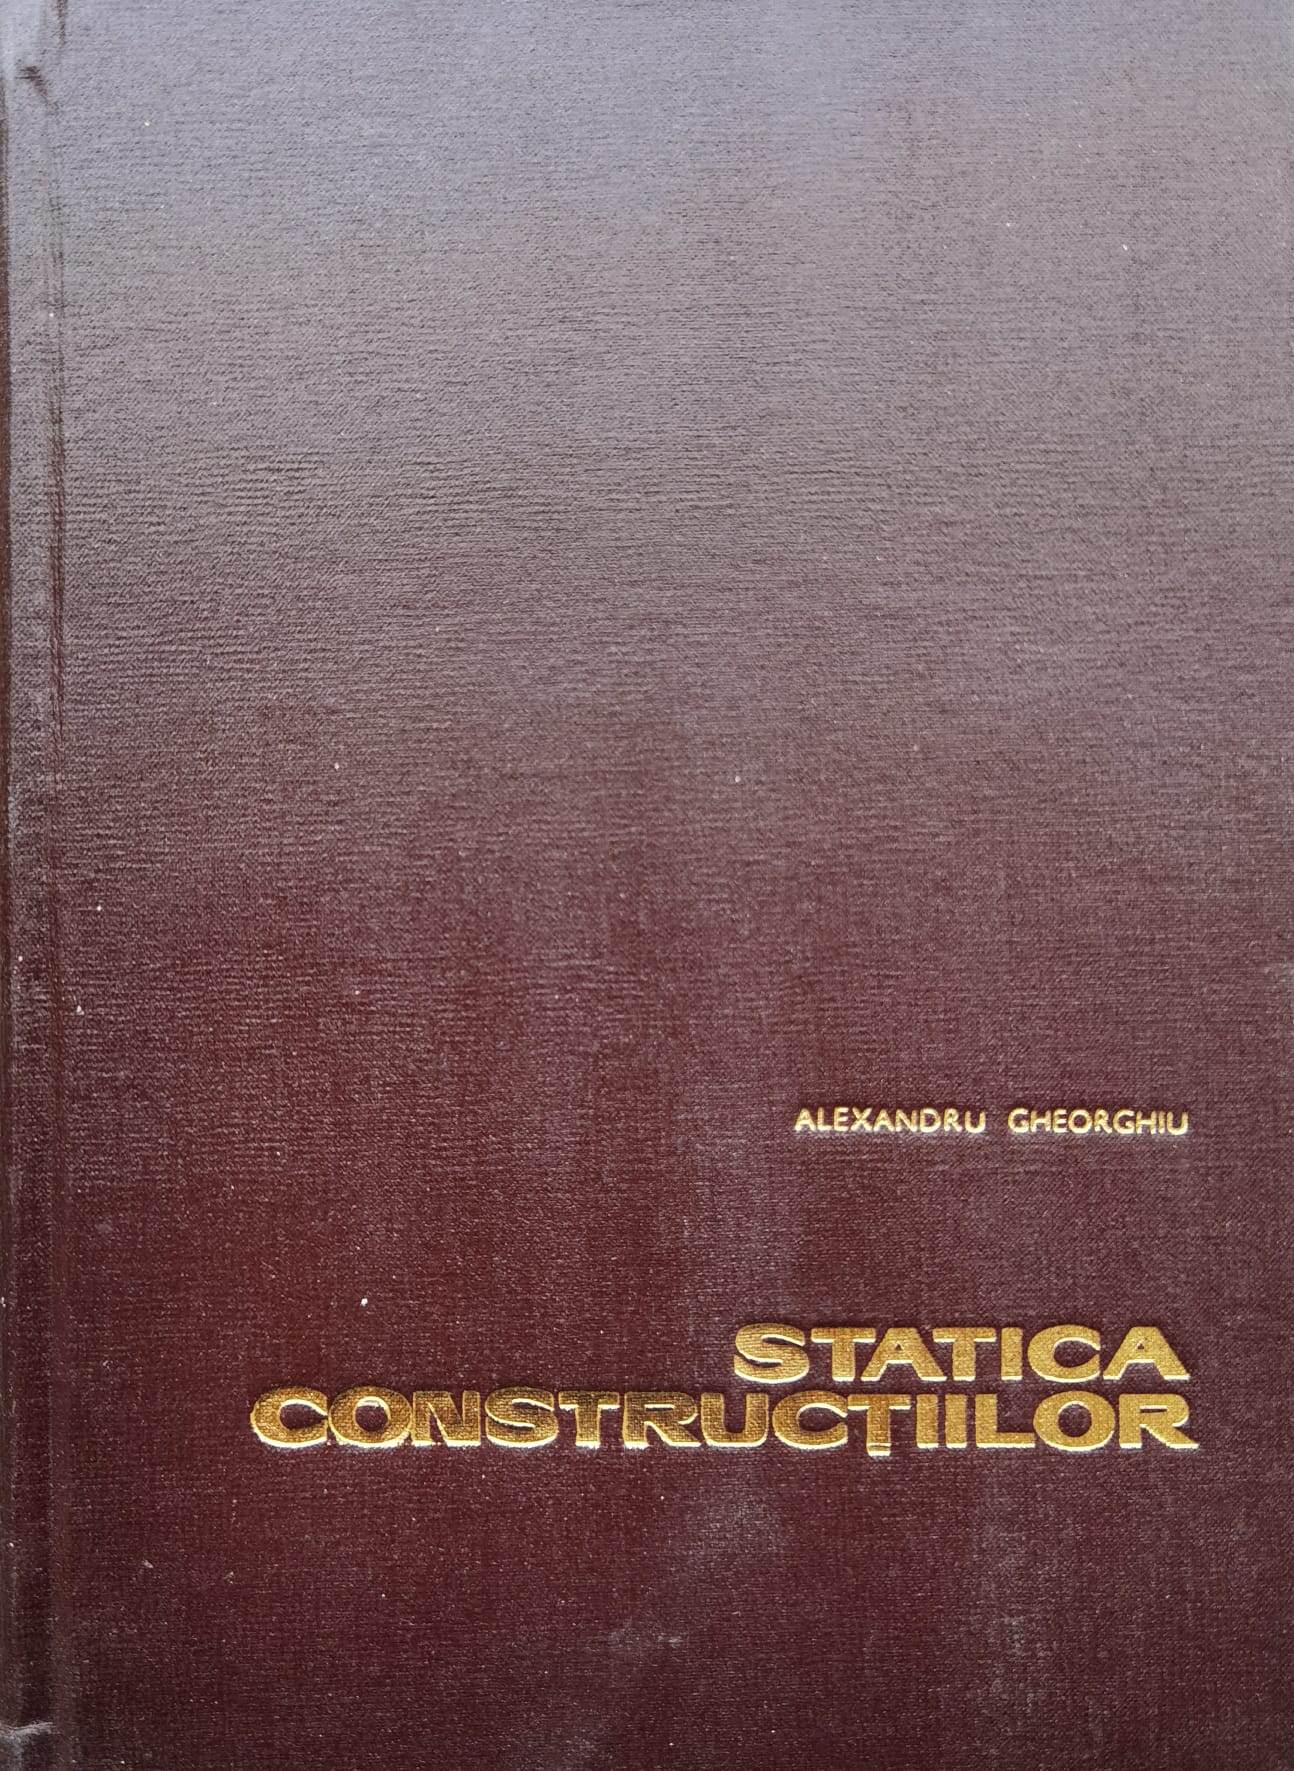 statica constructiilor                                                                               al. gheorghiu                                                                                       